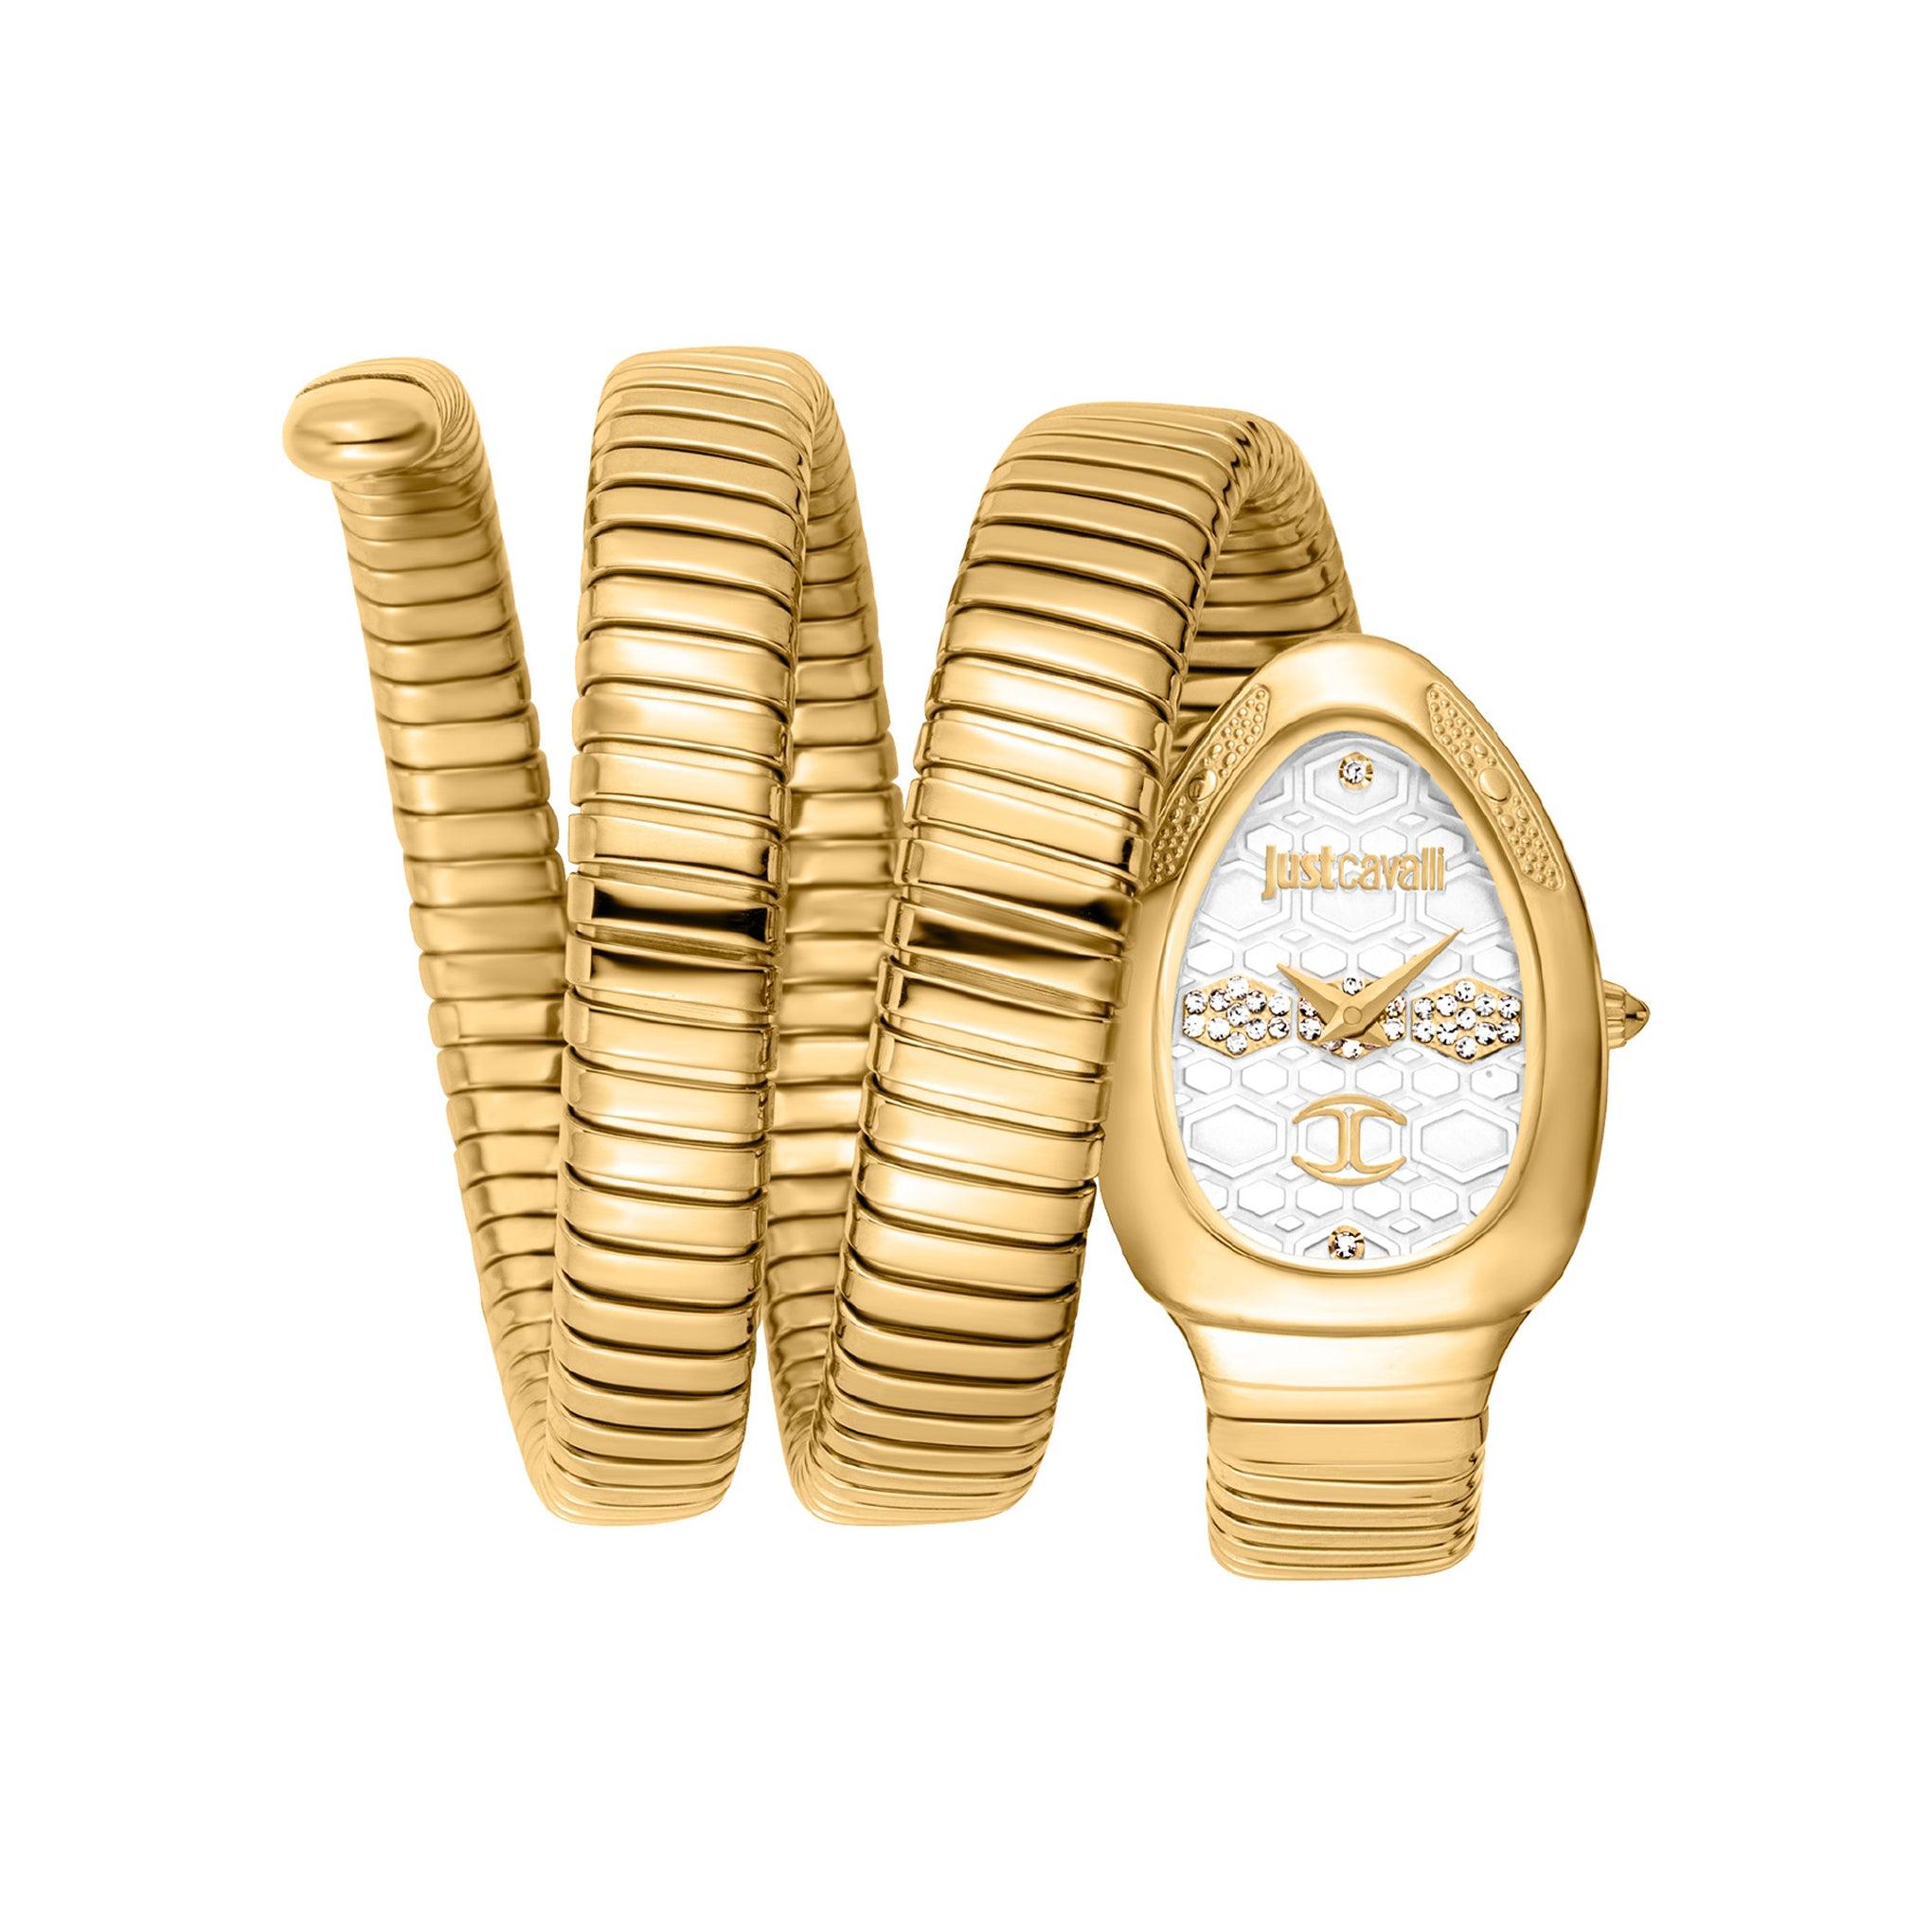 ساعة يد نسائية بشكل ثعبان - ذهبي - بحزام معدني مقاوم للصدأ جست كافالي Just Cavalli Cosenza Women's Yellow Gold Silver Stainless Steel Watch